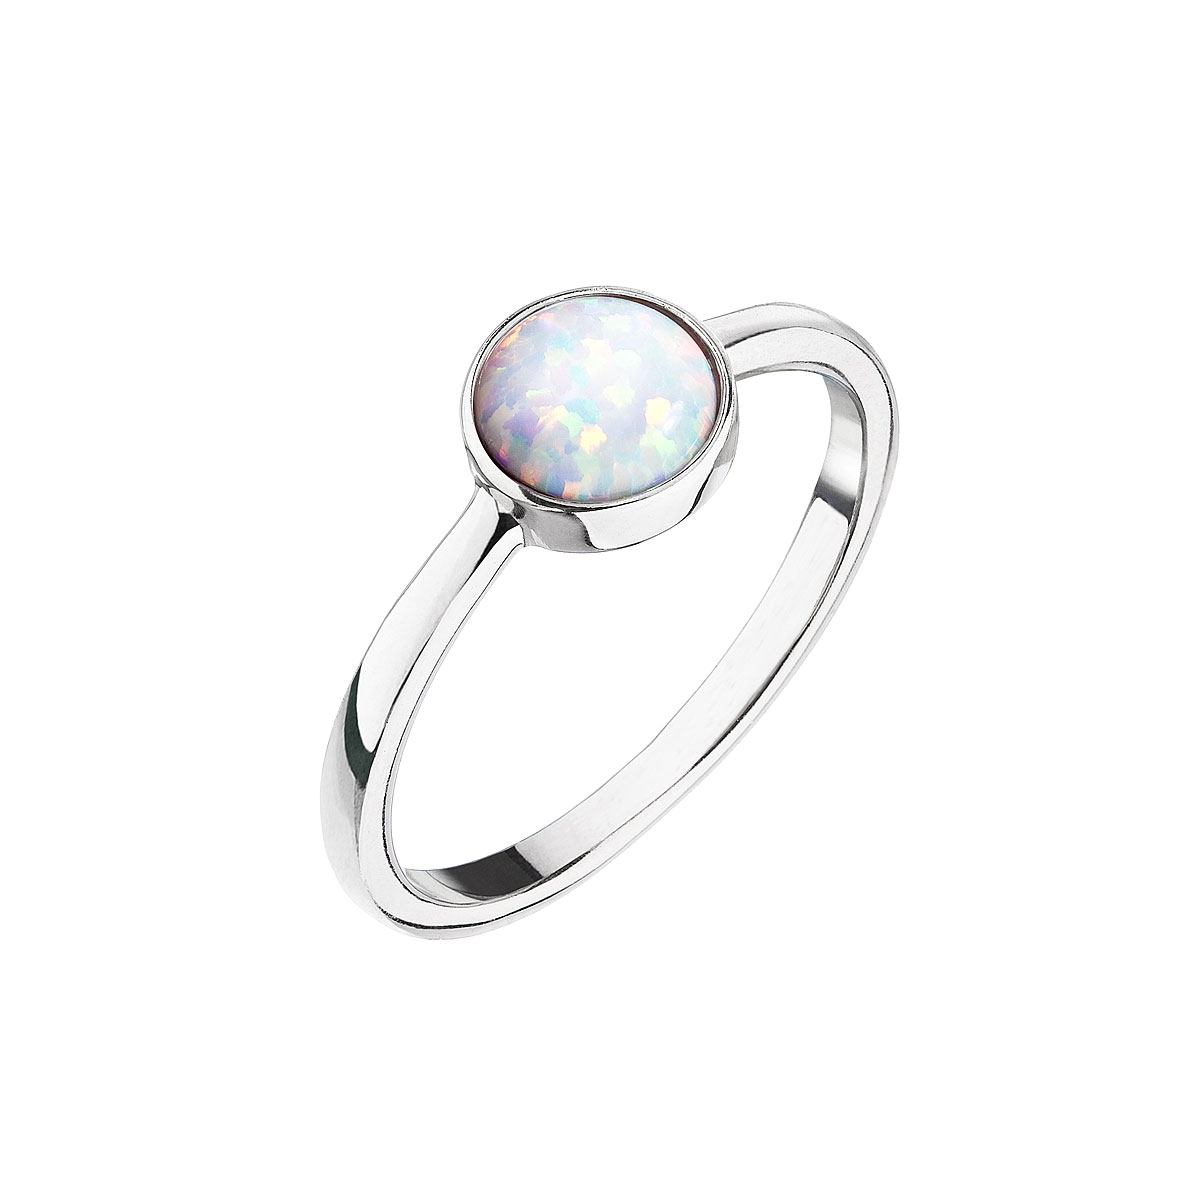 Prstene - Evolution Group Strieborný prsteň s bielym opálom 15001.1 white 52 mm